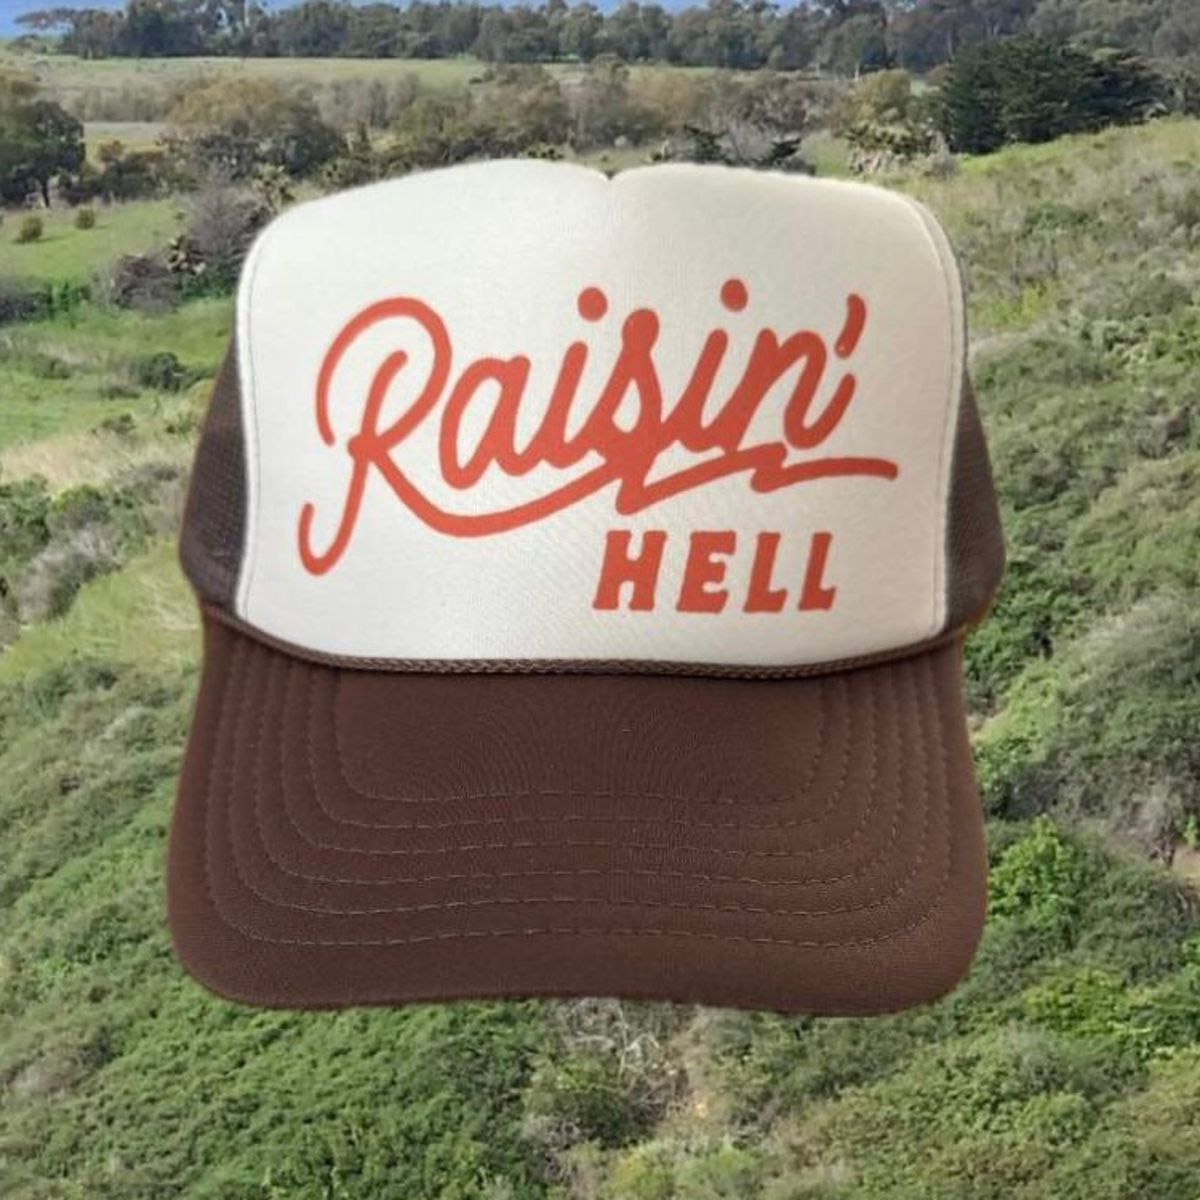 Raisin' Hell Trucker Hat | Country Truckers Hat by Haute Sheet